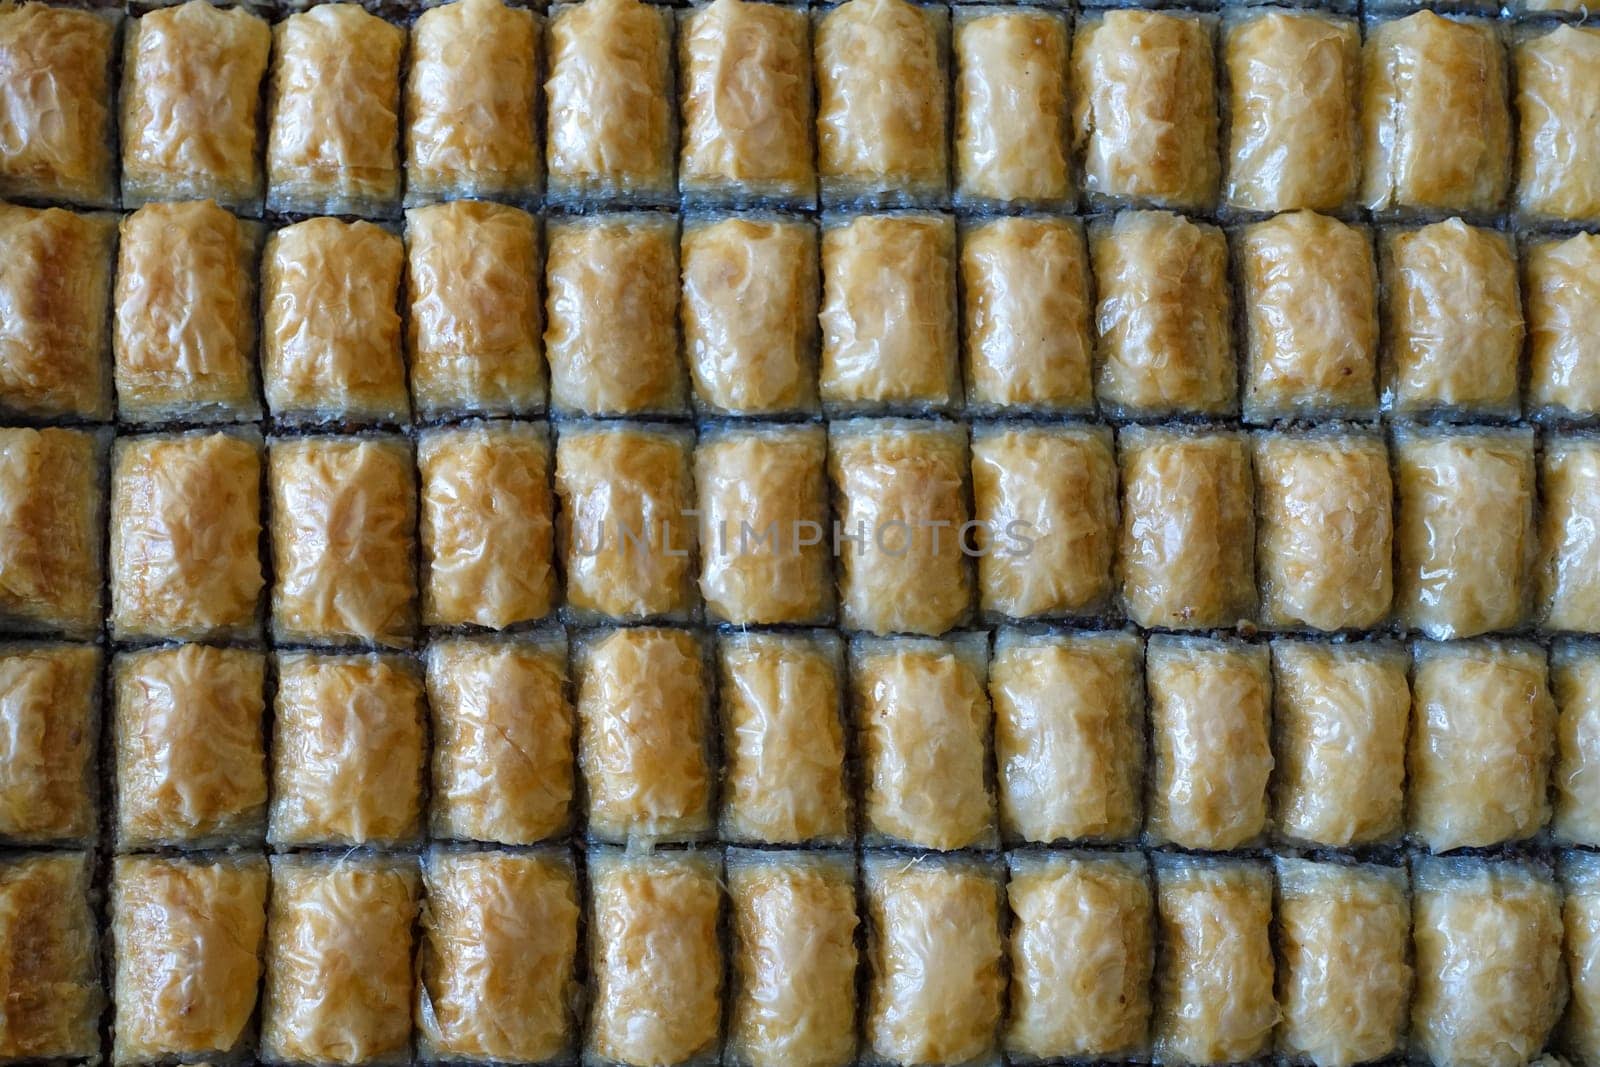 turkish baklava,close-up baklava dessert,baklava dessert in turkey,Gaziantep baklava, by nhatipoglu